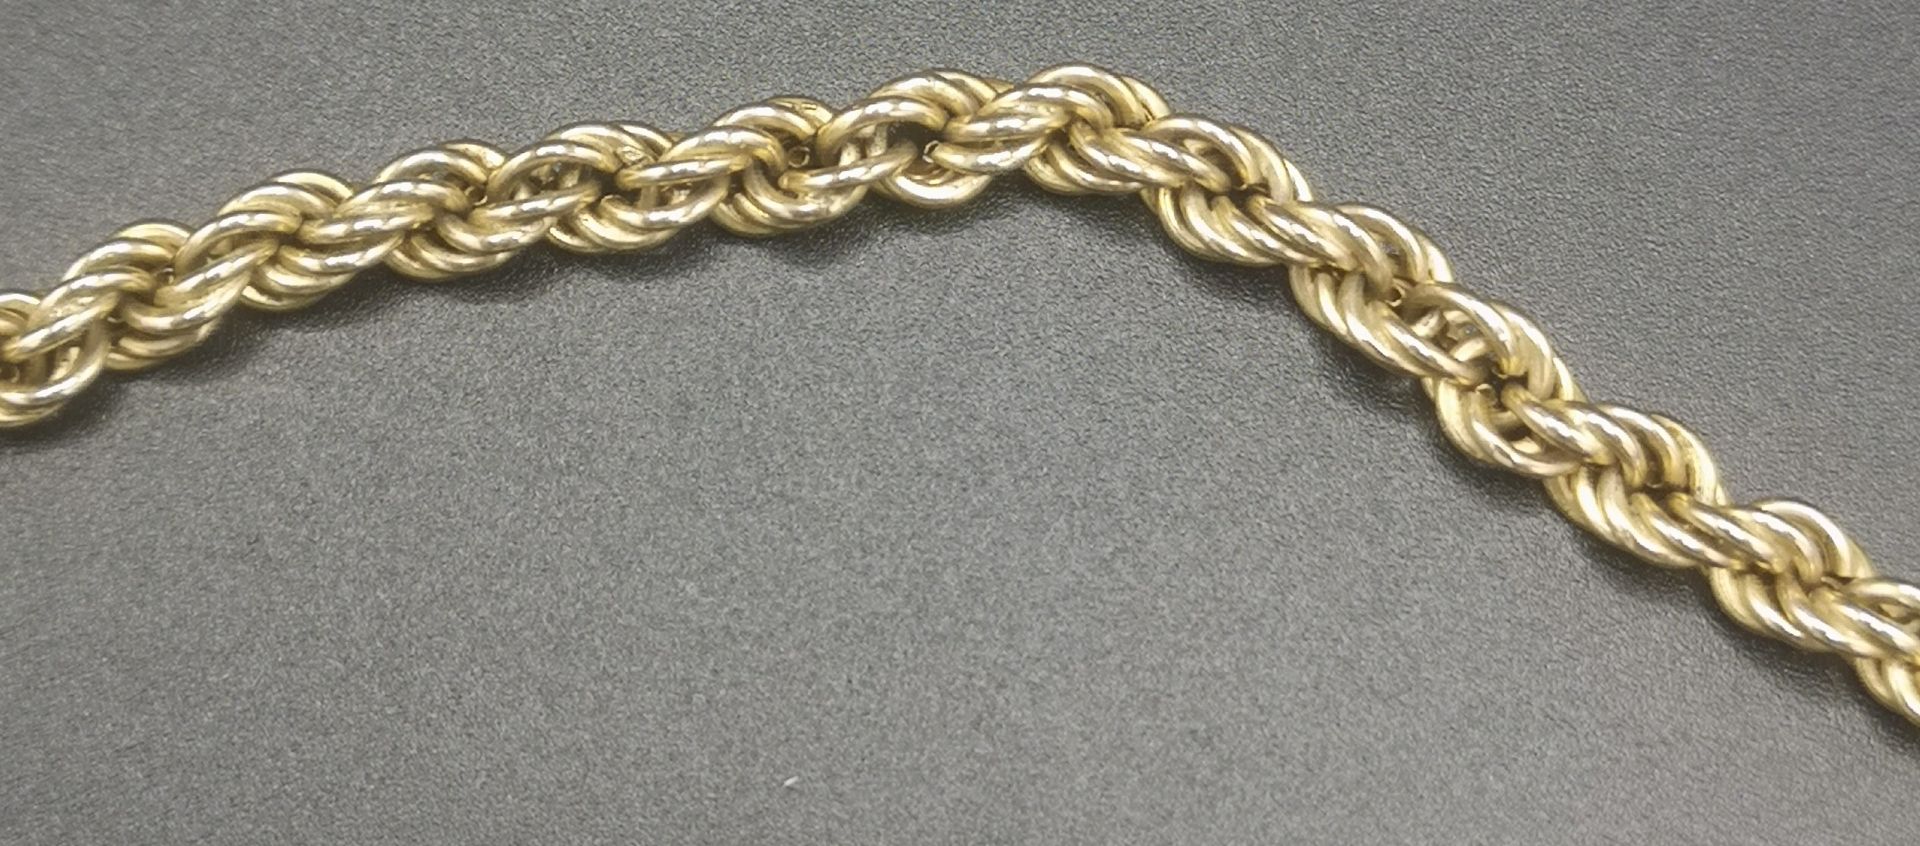 9ct gold rope twist chain - Bild 3 aus 4